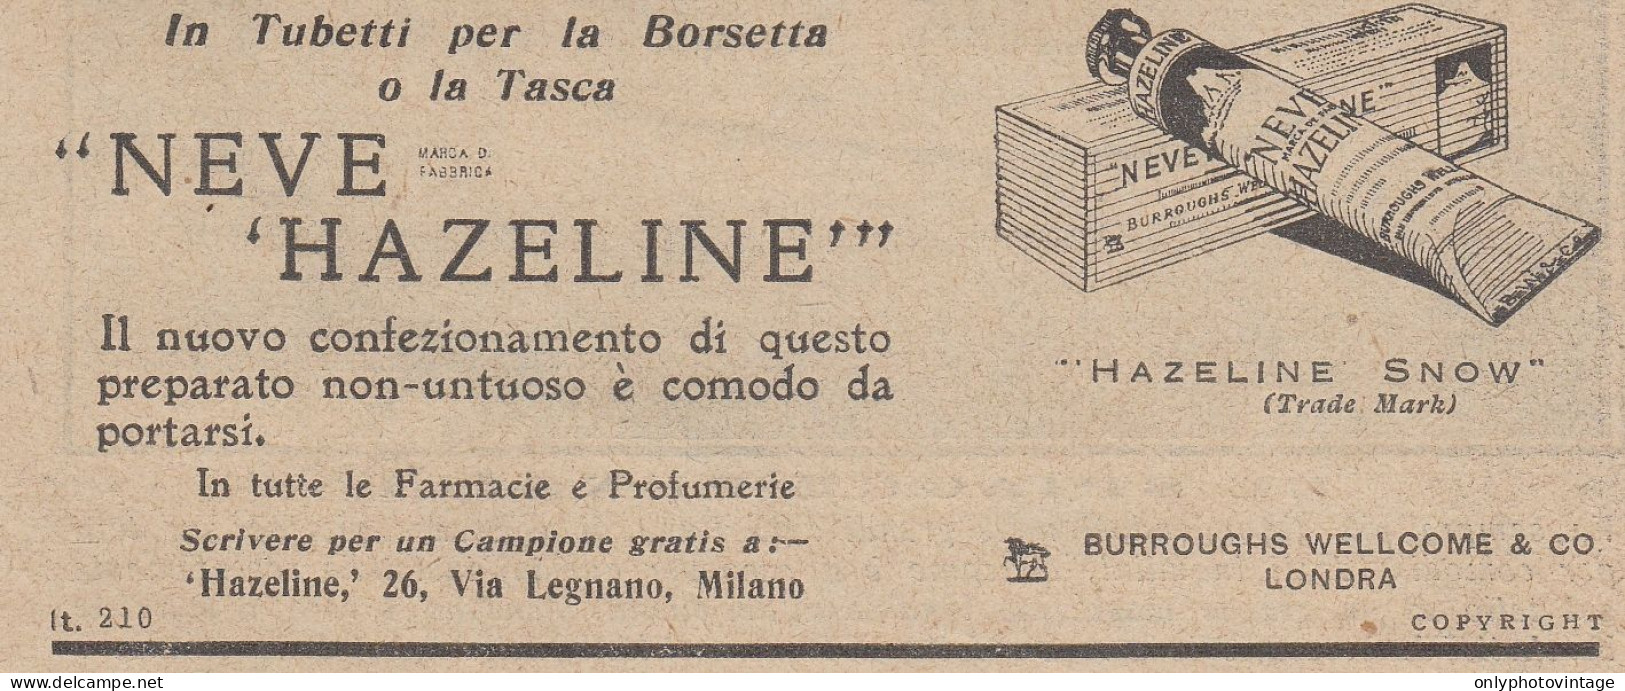 Neve Hazeline - Pubblicità D'epoca - 1931 Vintage Advertising - Advertising